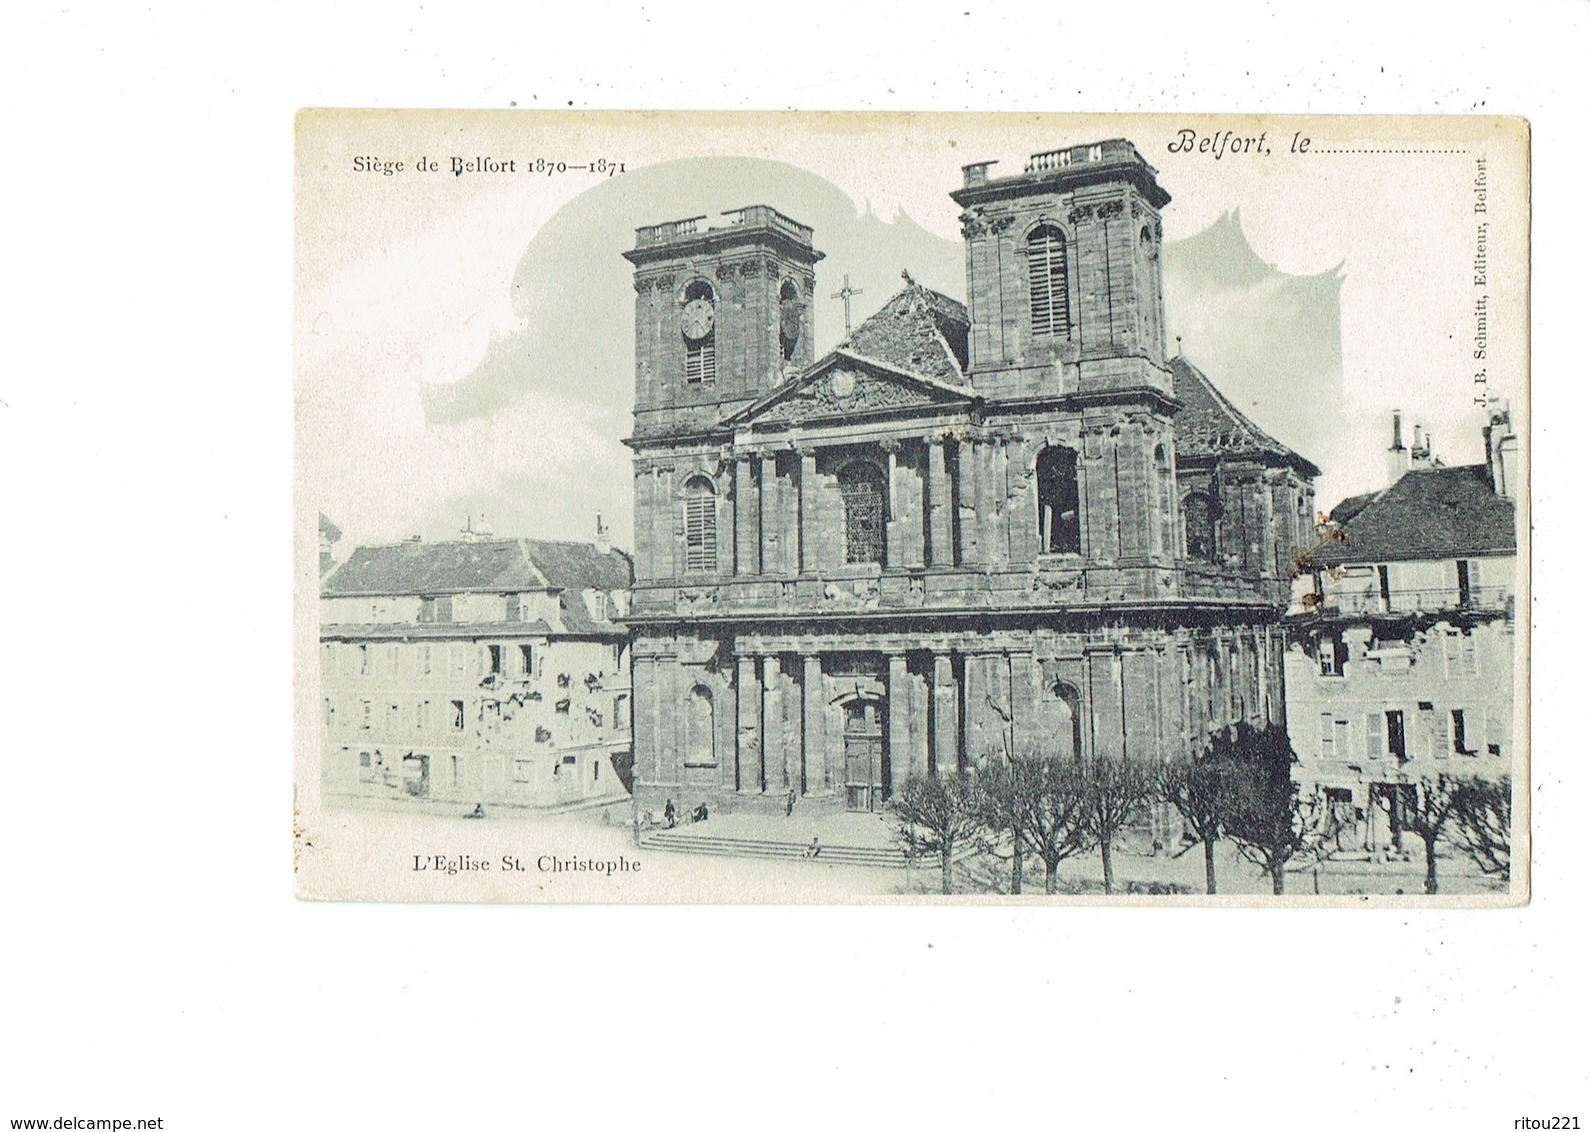 Cpa - 90 - Belfort – Siège De Belfort 1870-1871 - L'Eglise St Christophe - J.B. SCHMITT - Belfort – Siège De Belfort